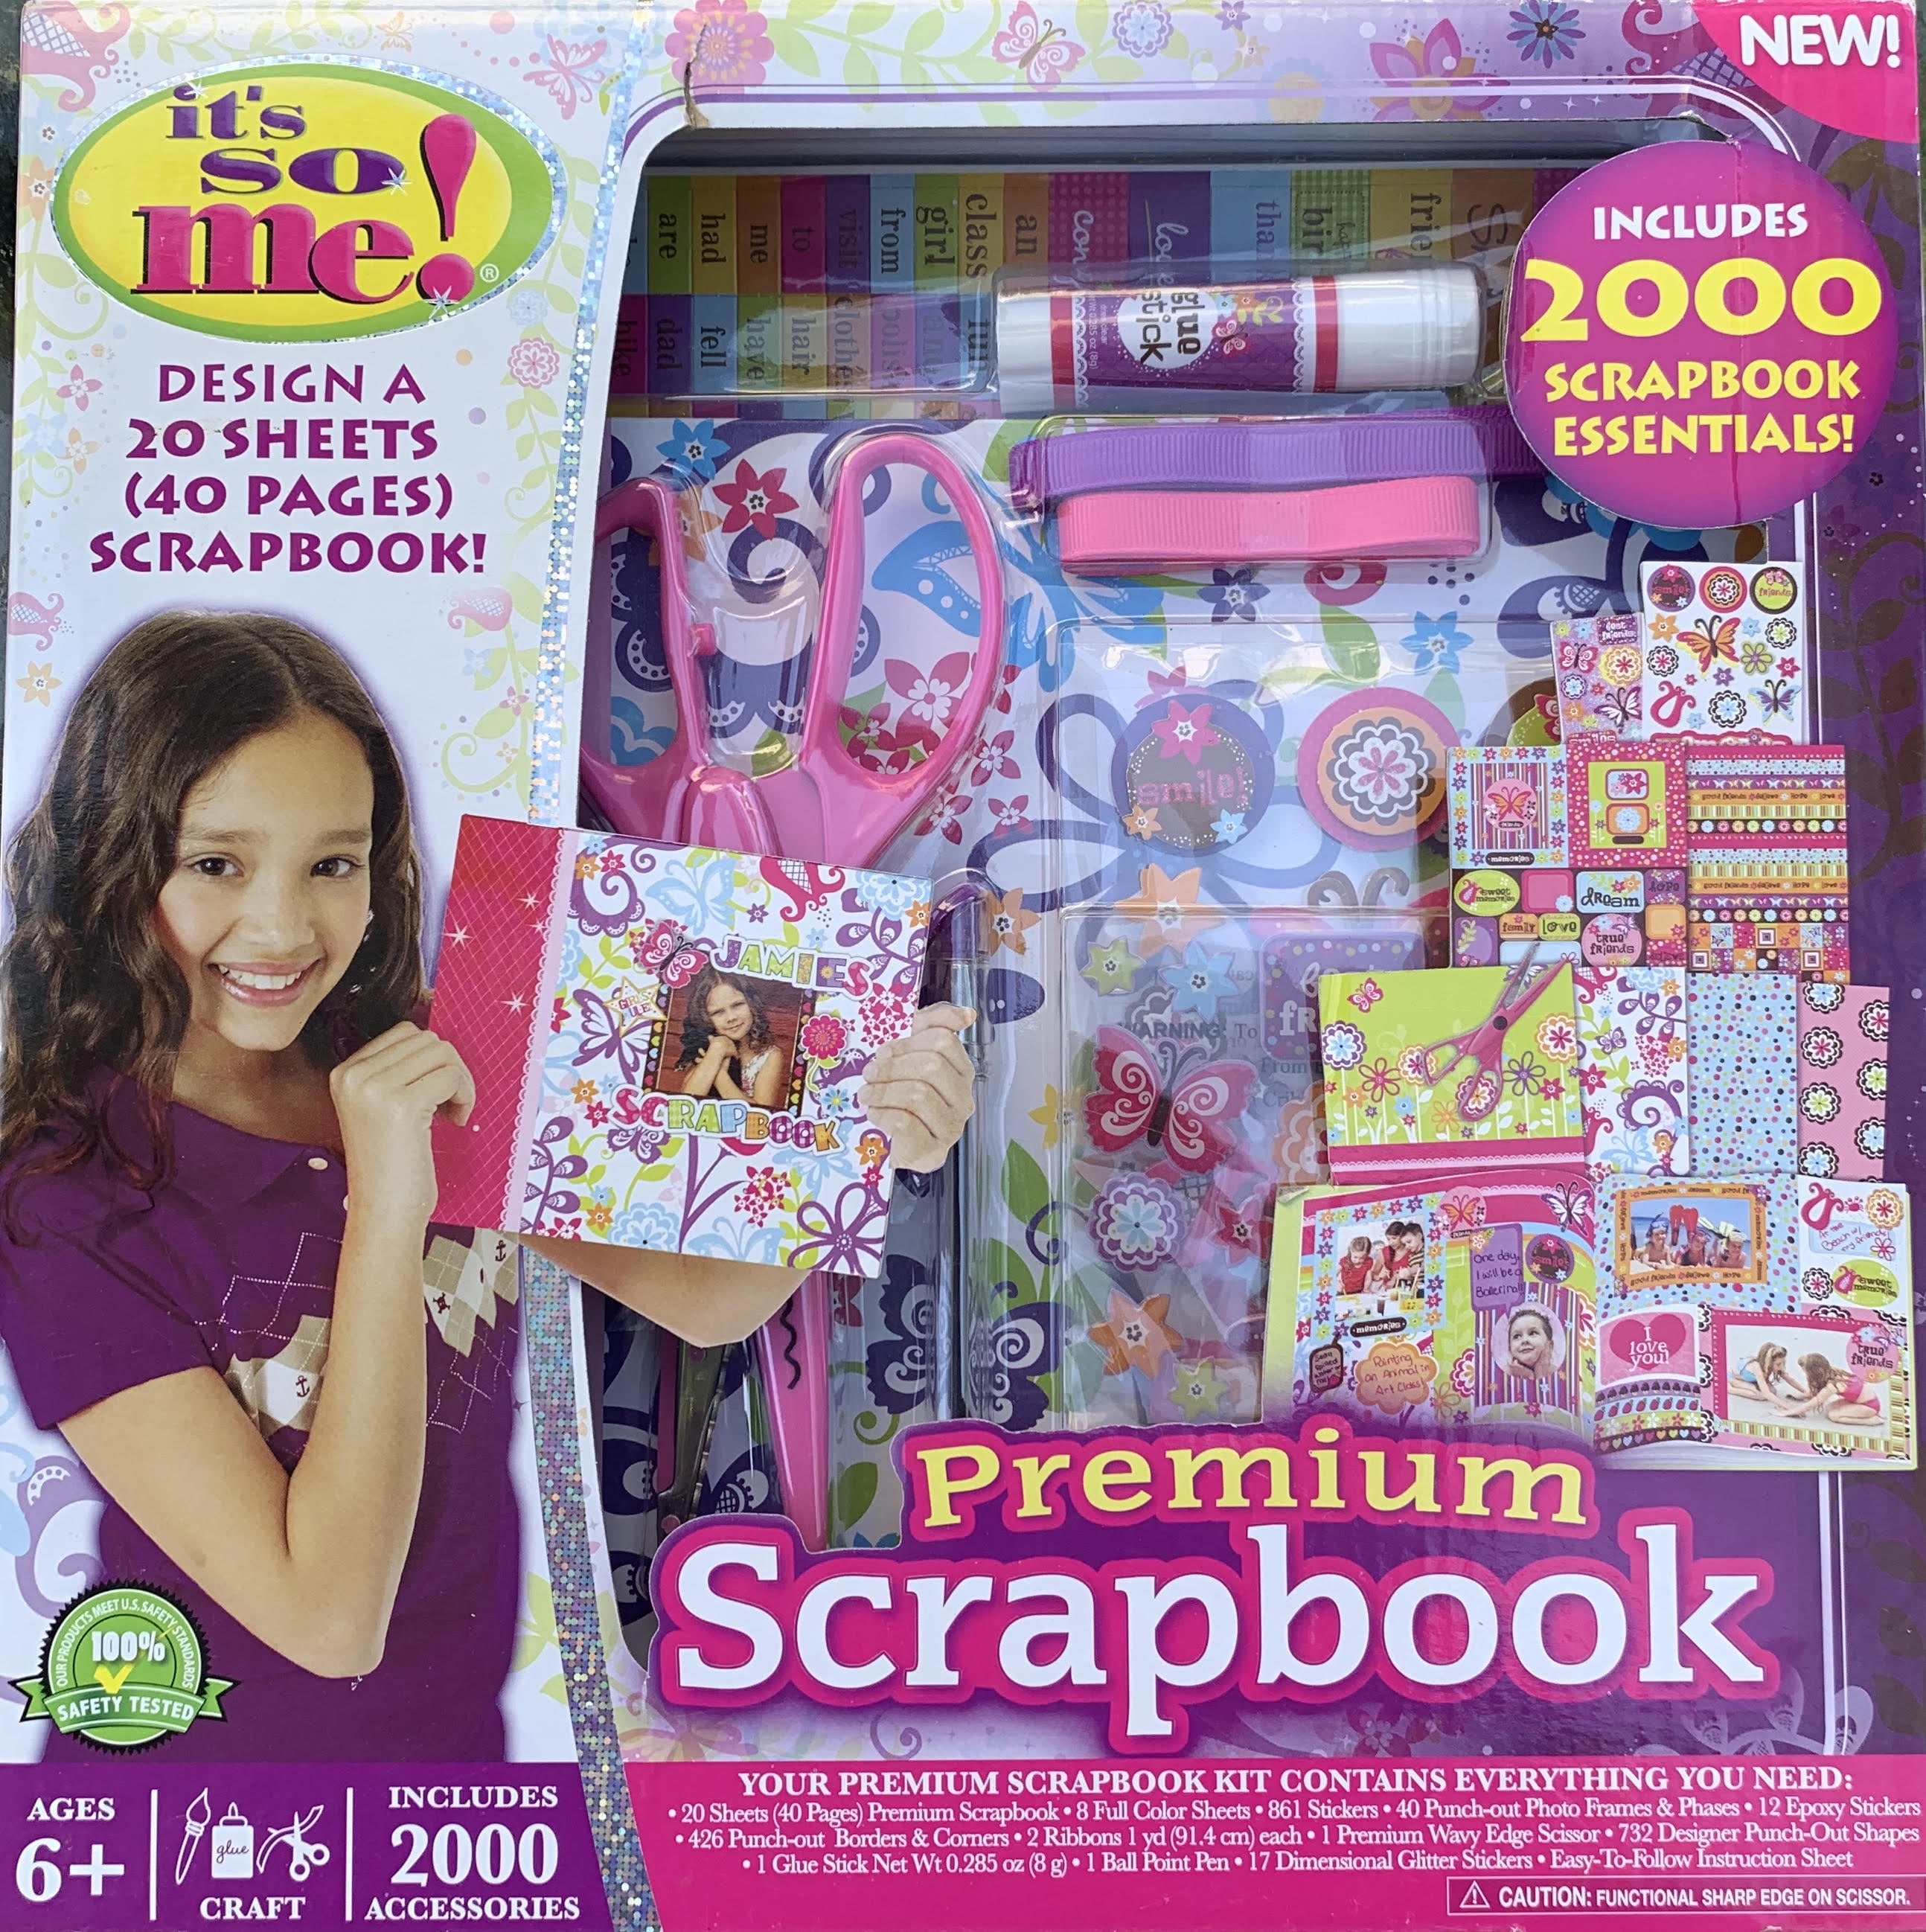 It's So Me! Premium Scrapbook Kit, 2000 Accessories Arts & Crafts 